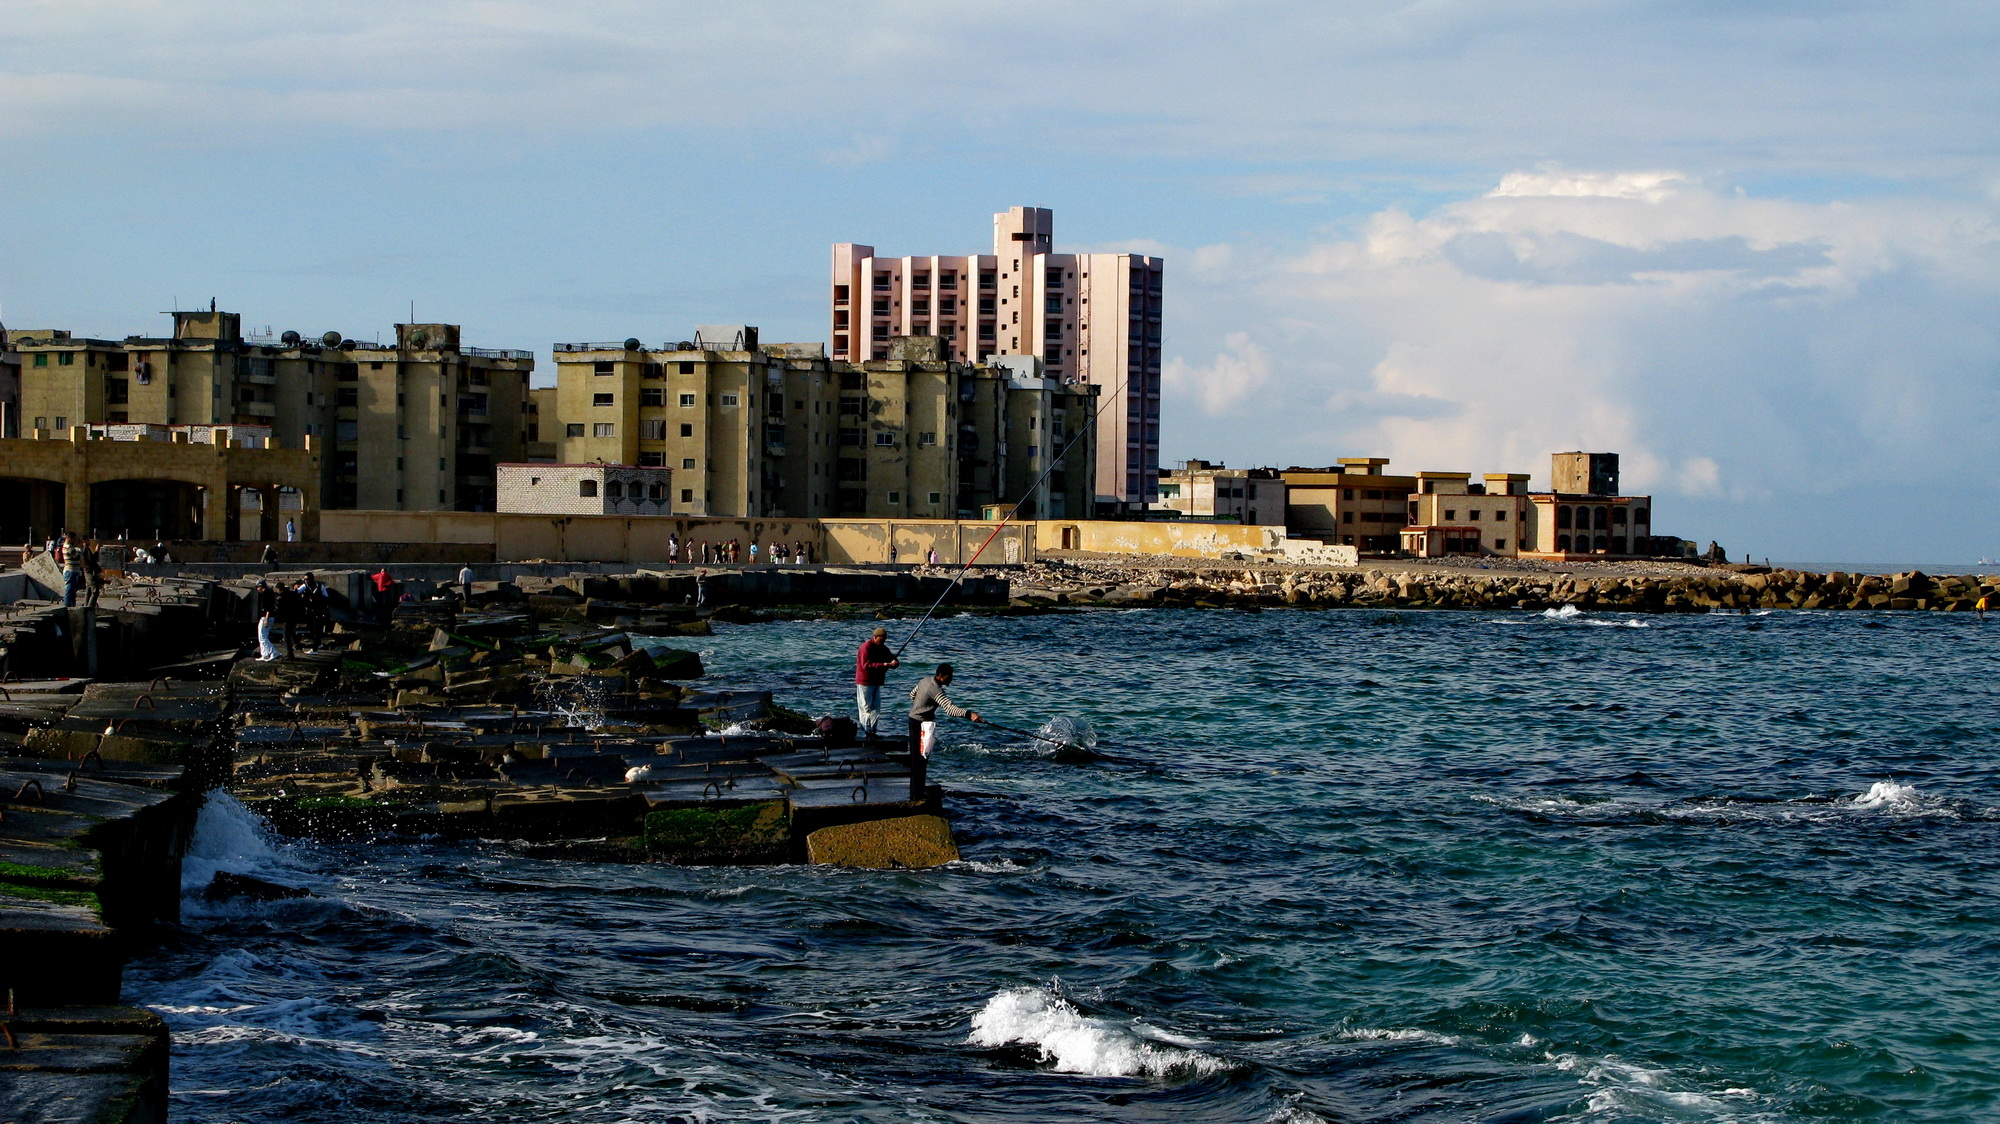 صور المعالم السياحية في مدينة الأسكندرية 2014 , صور جميلة جدا لمحافظة الأسكندرية 2014